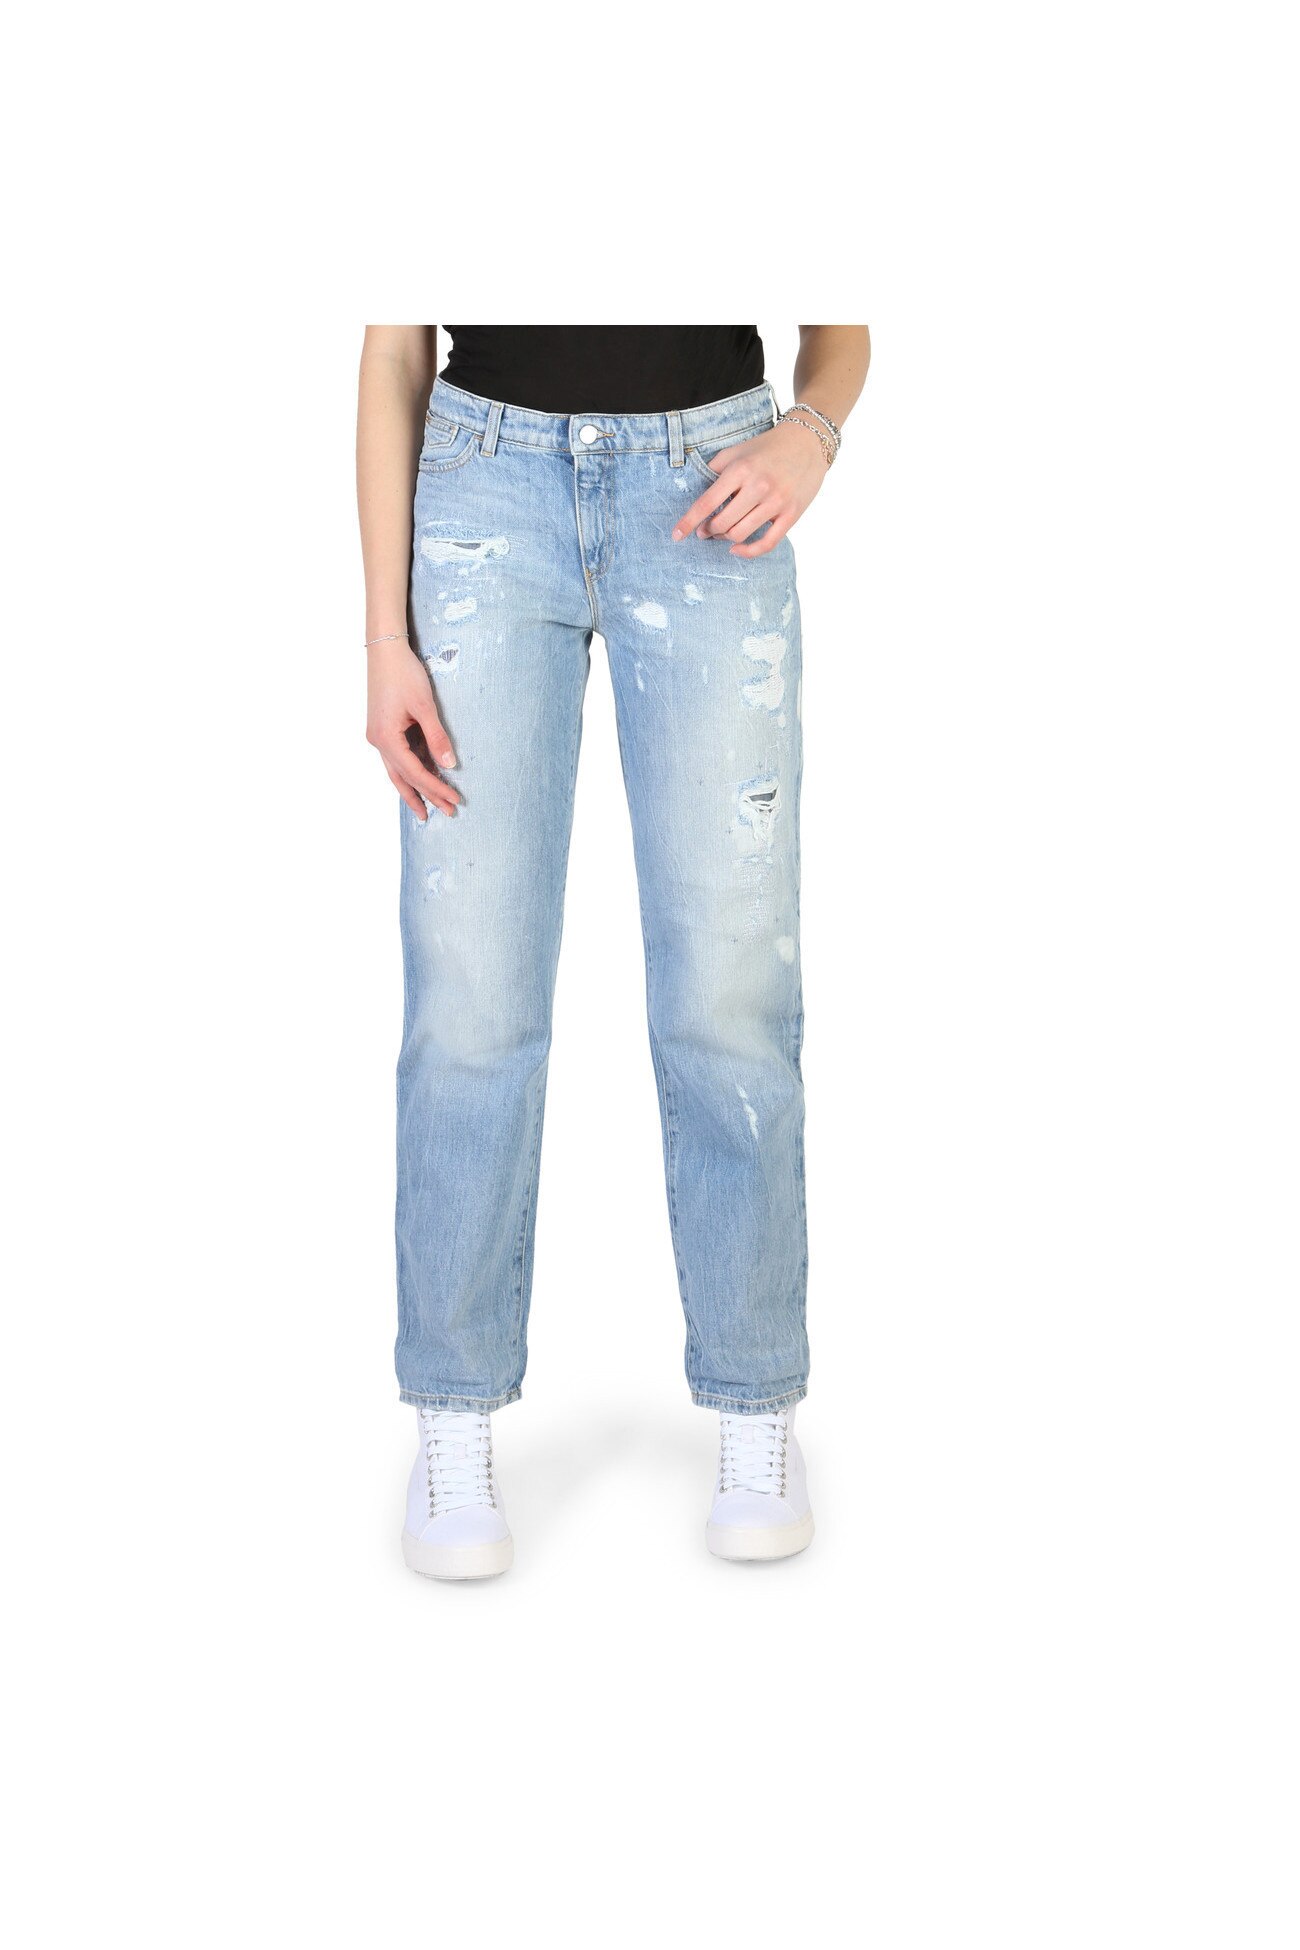 velvet Mars rush Blugi femei Armani Jeans model 3Y5J15_5D1AZ - eMAG.ro